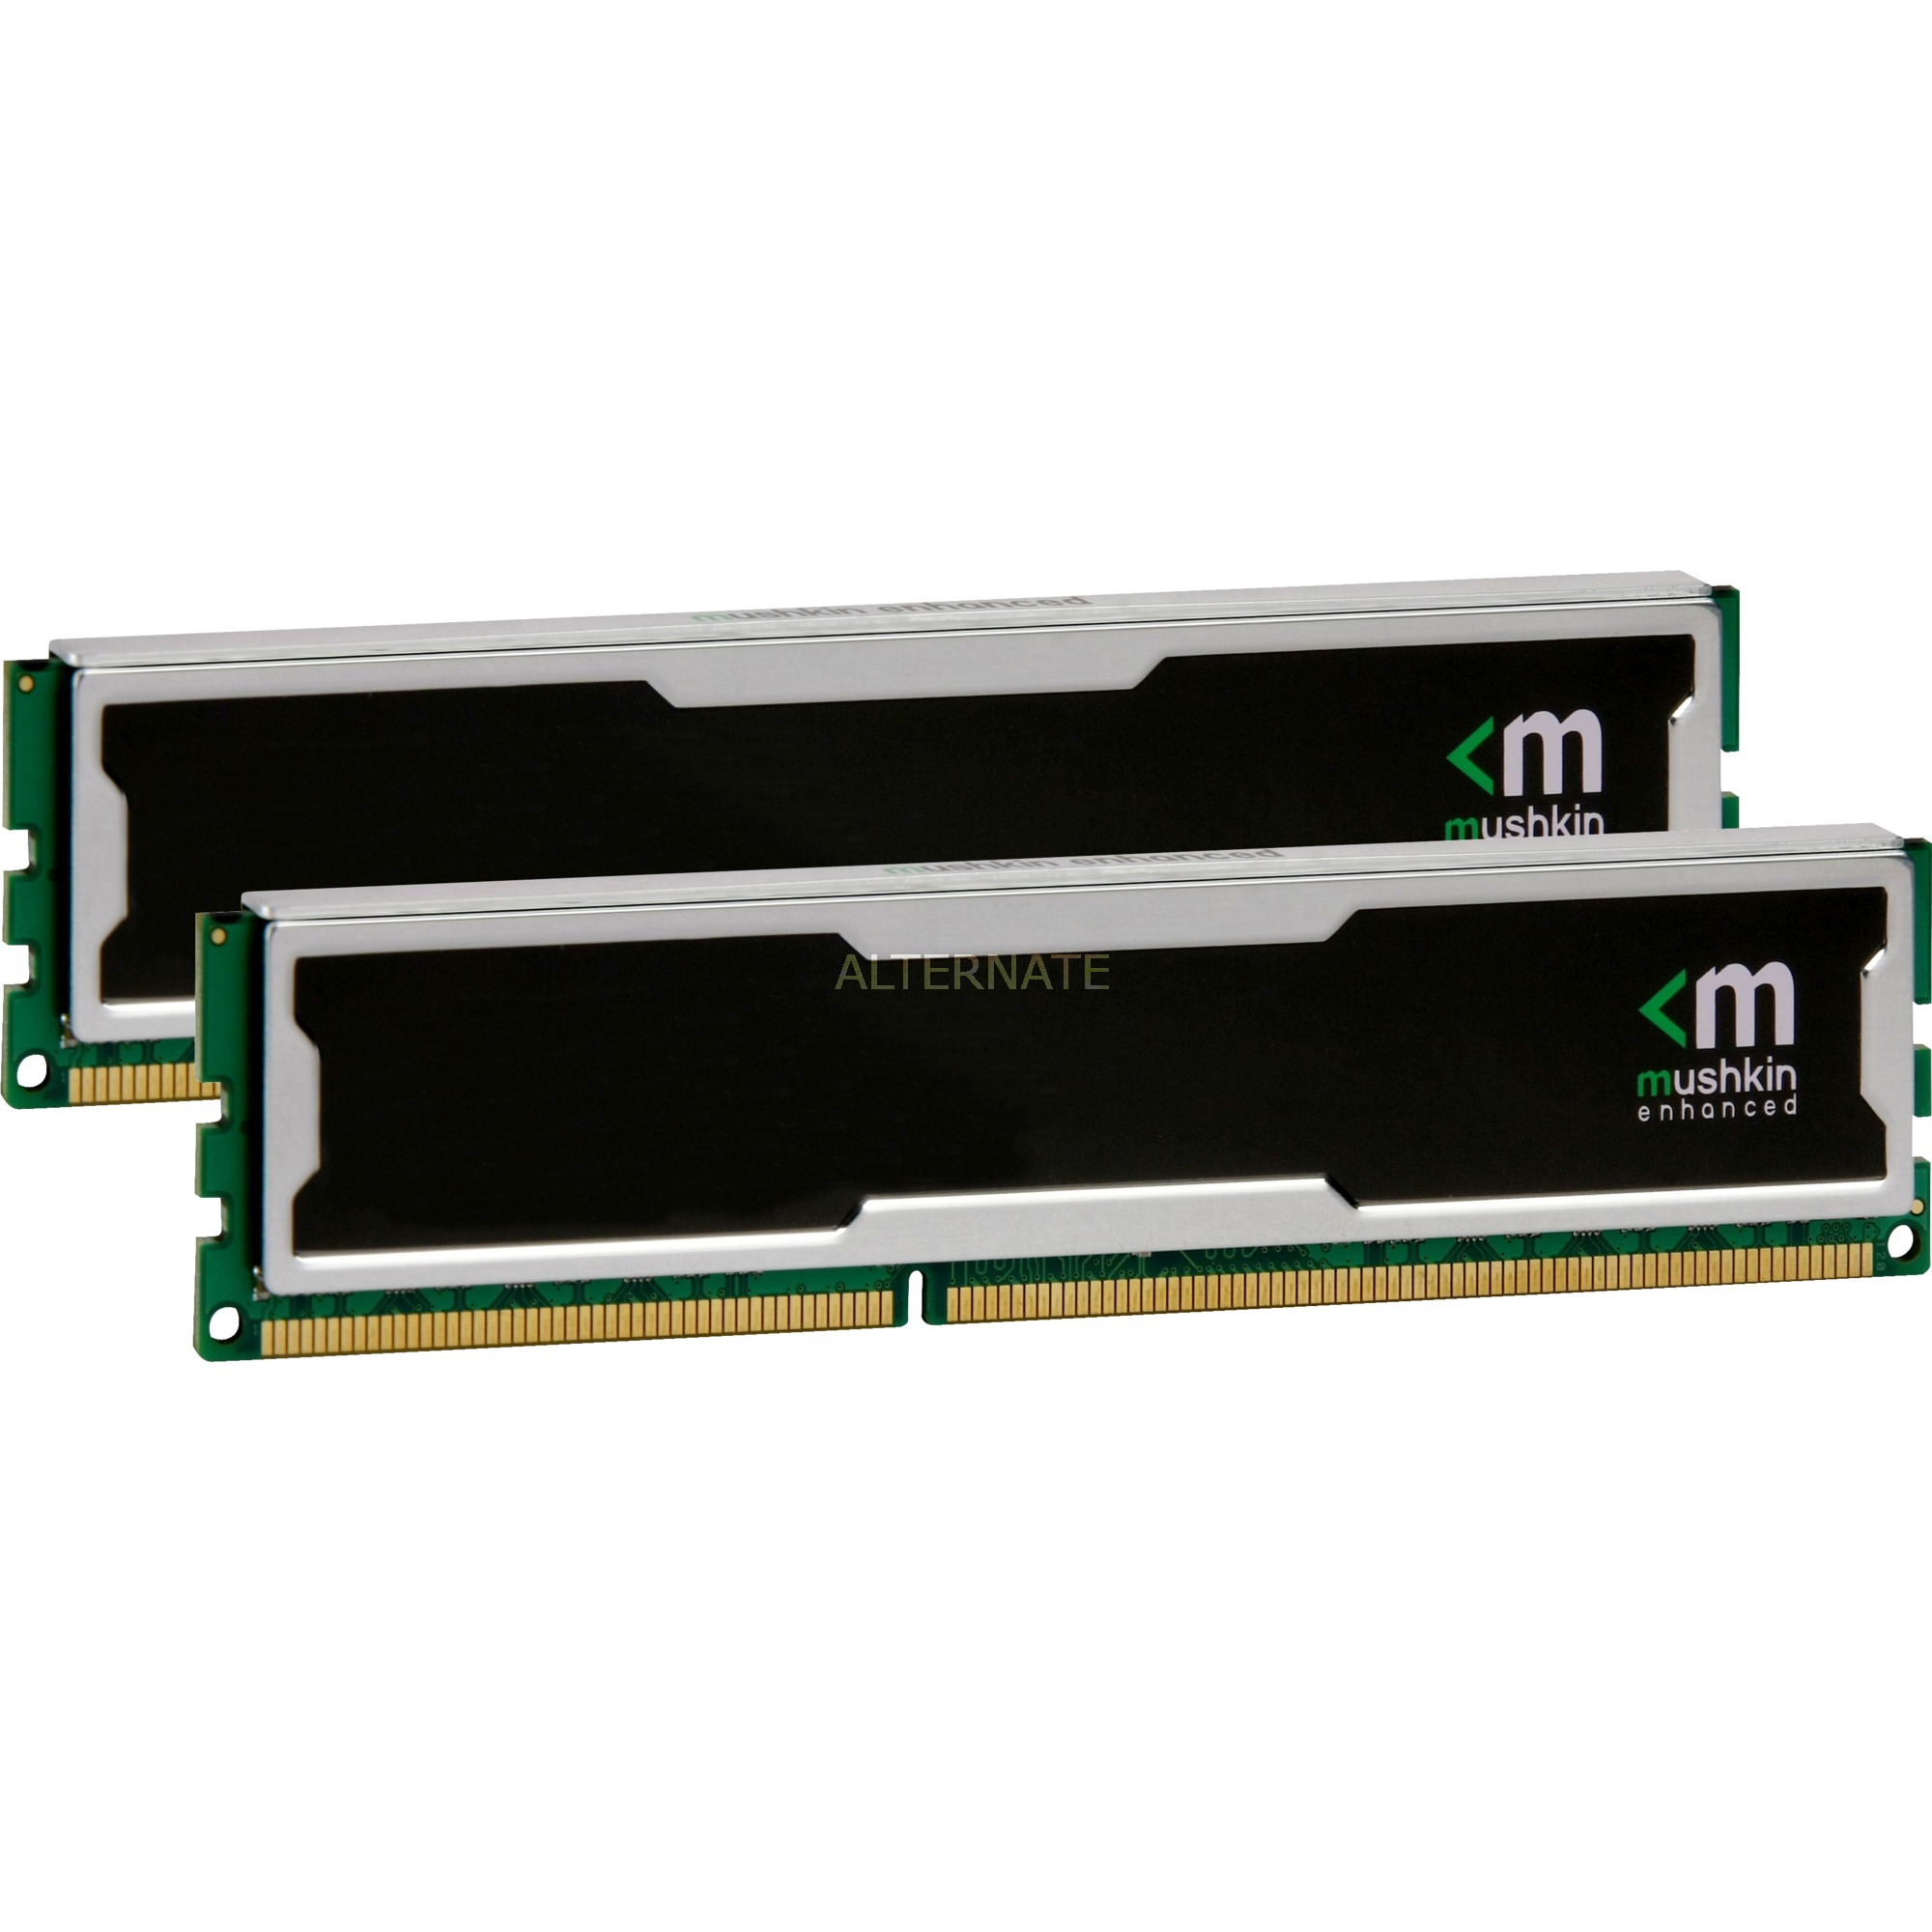 Silverline 2GB DDR2 800Mhz moduł pamięci, Pamięc operacyjna